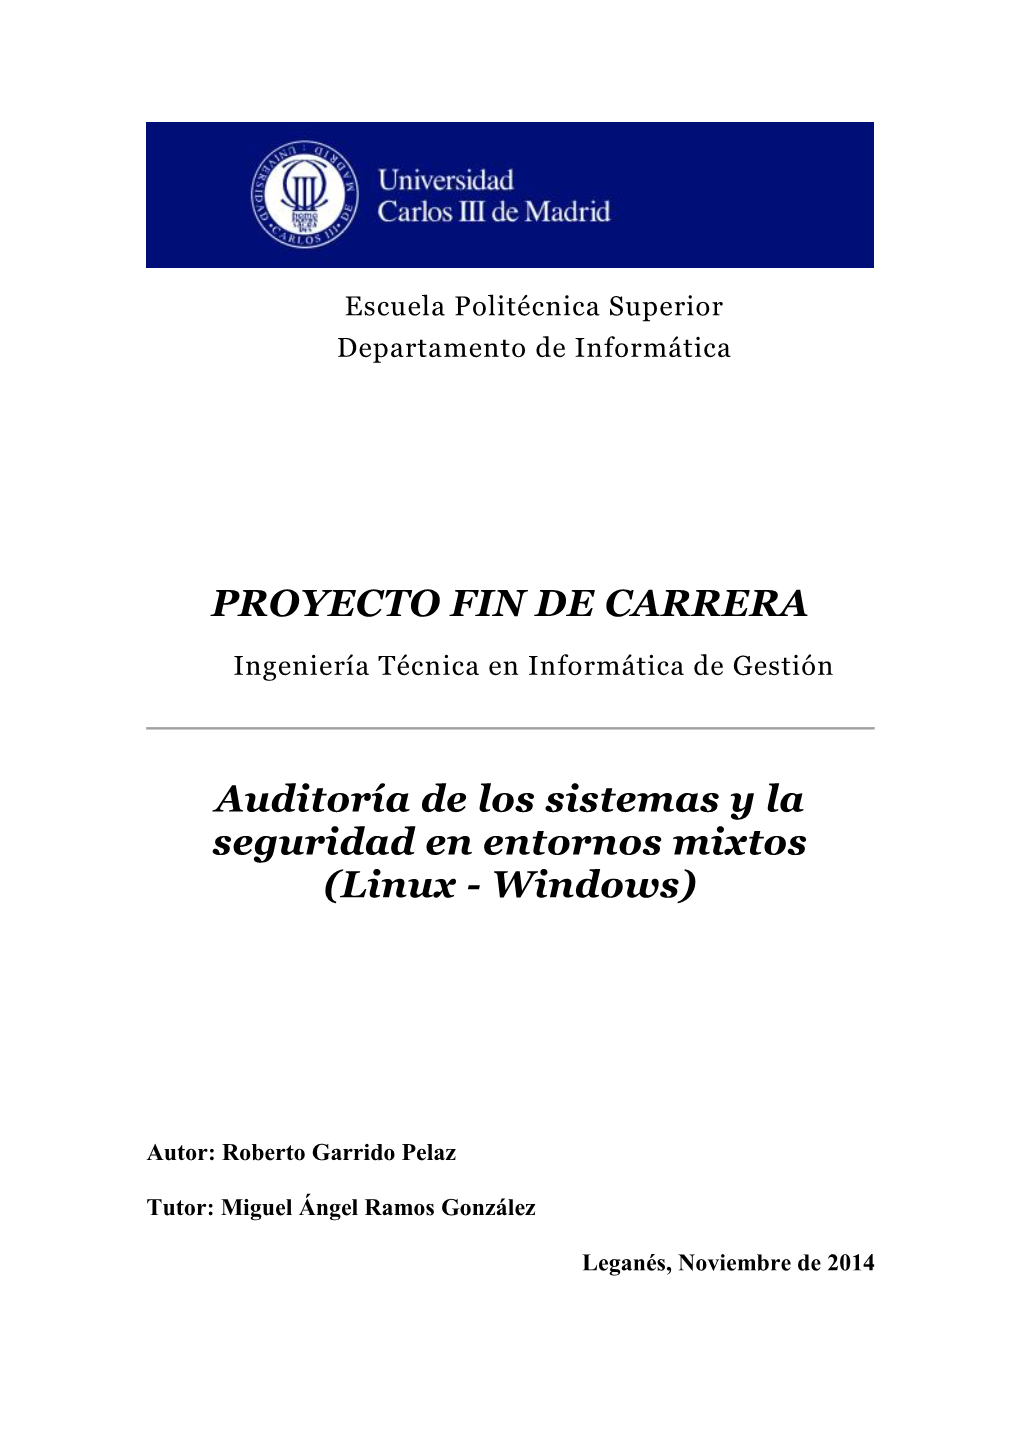 PROYECTO FIN DE CARRERA Auditoría De Los Sistemas Y